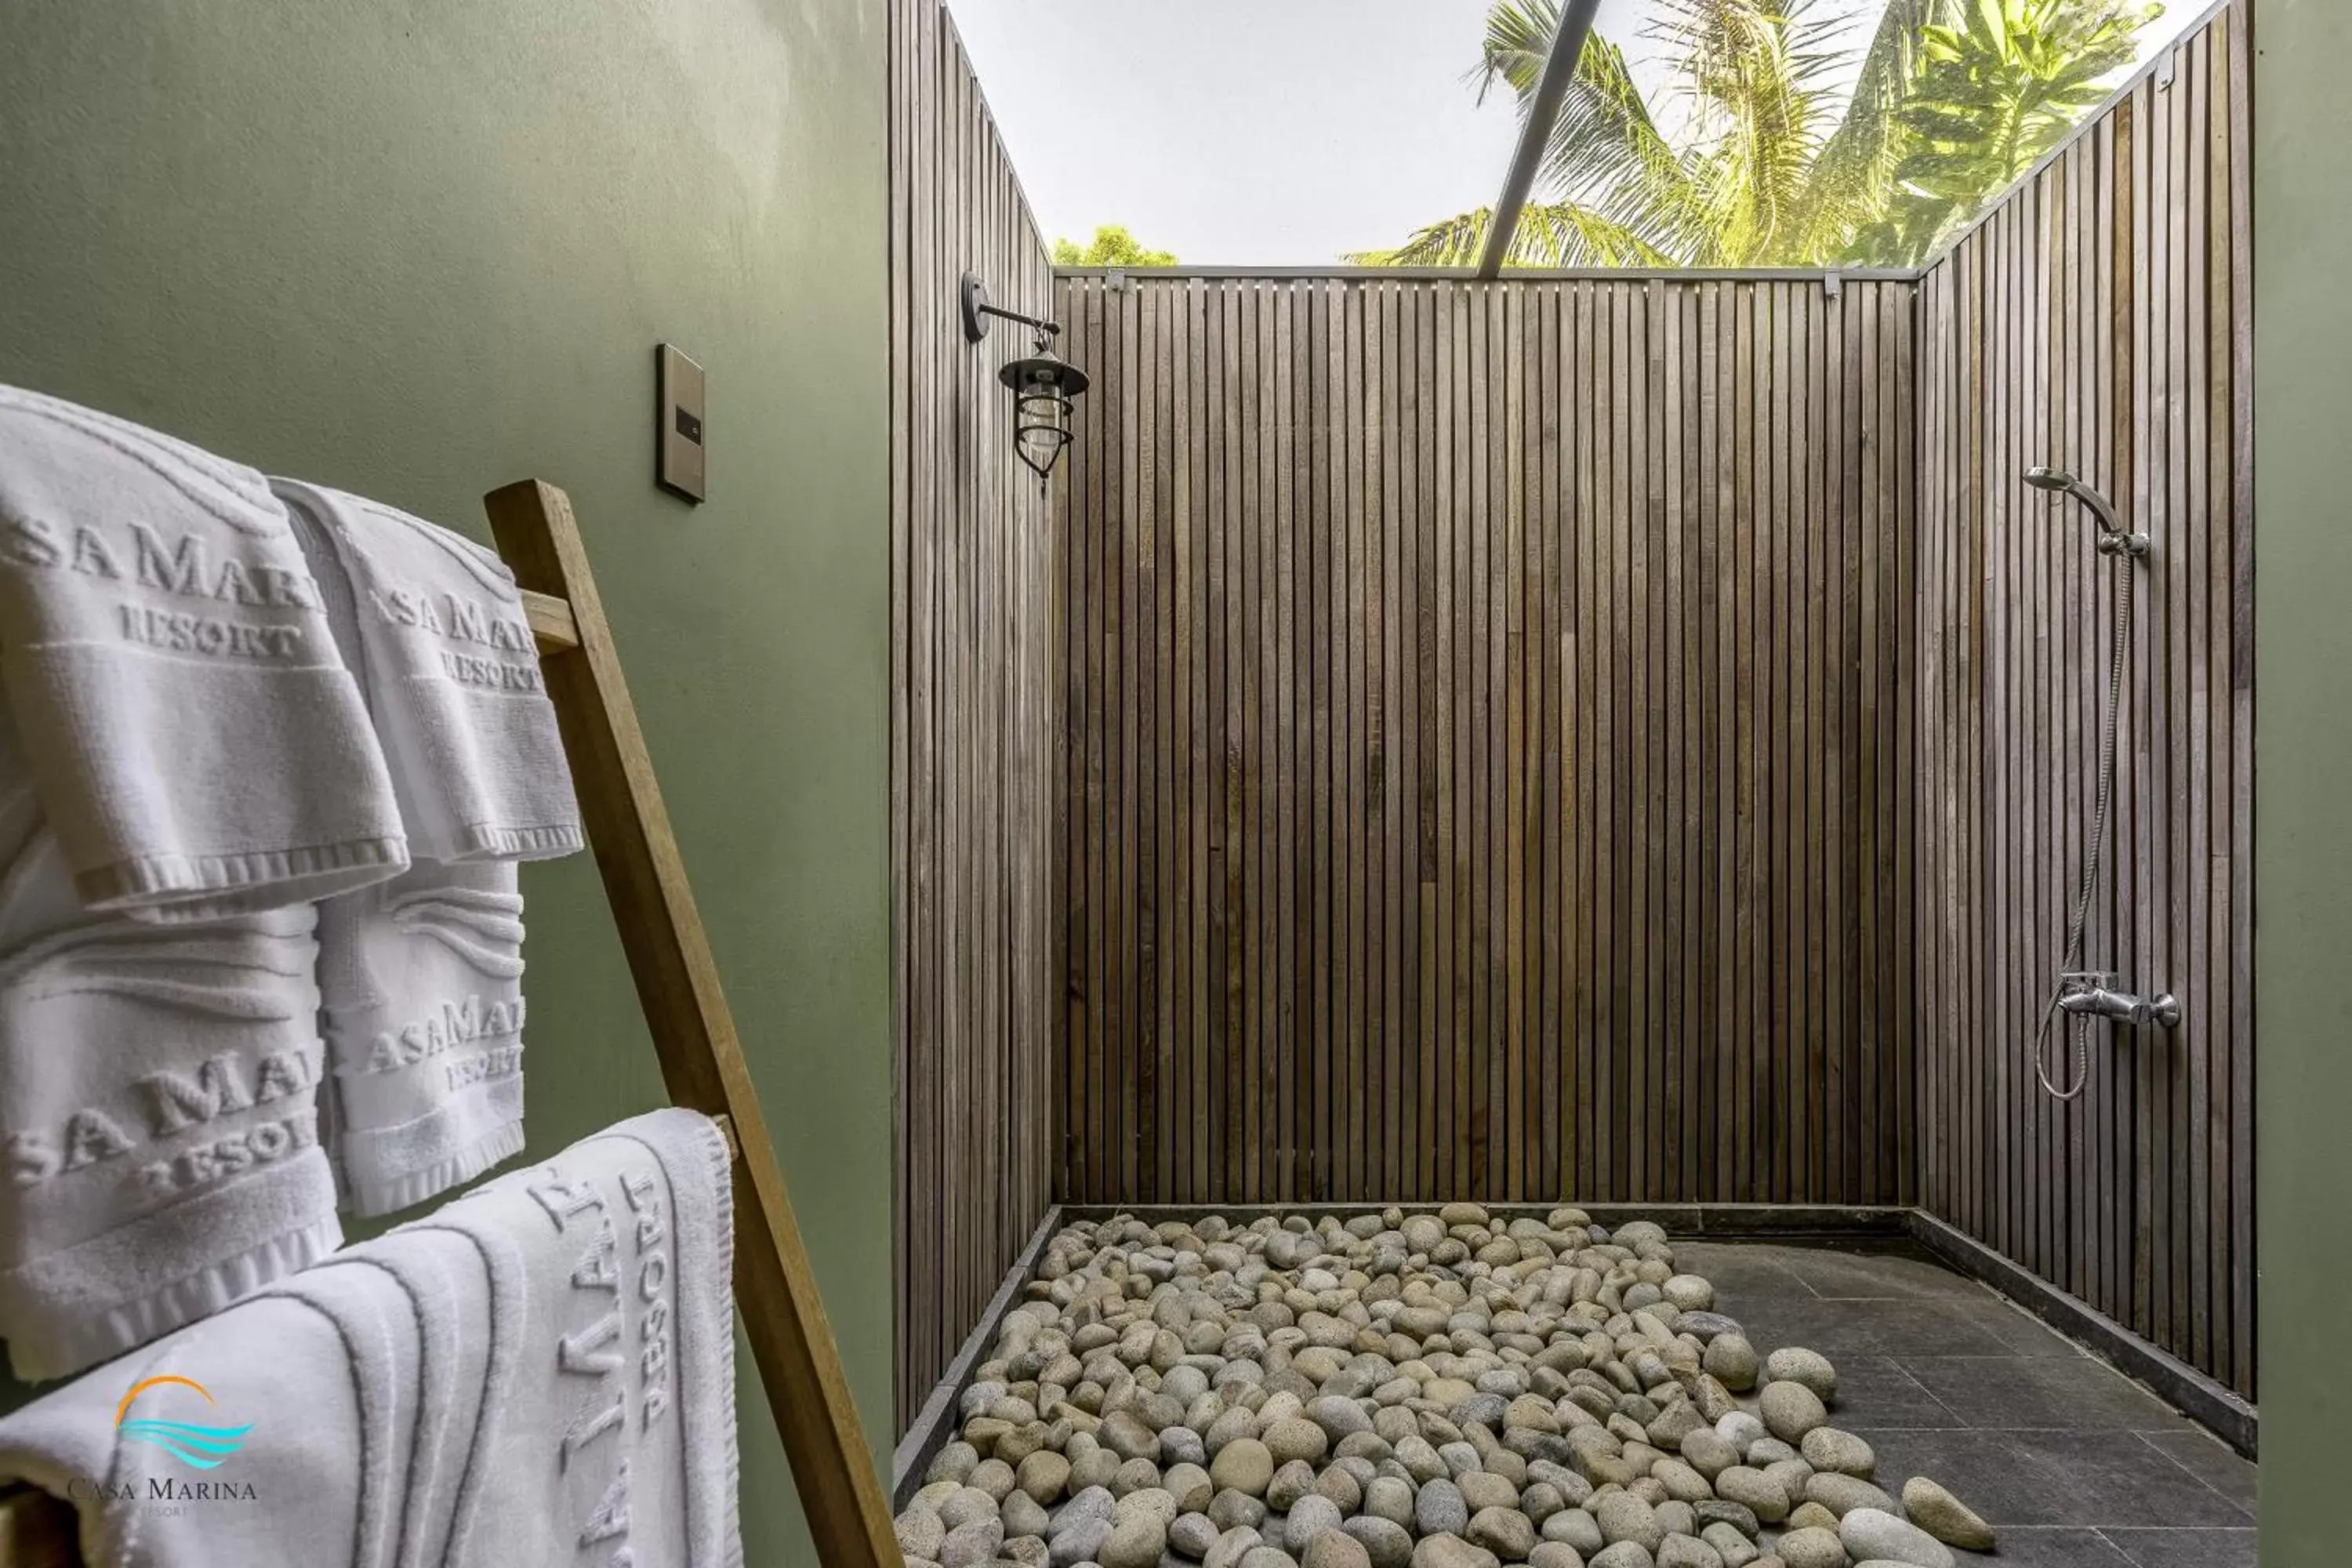 Bathroom, Bunk Bed in Casa Marina Resort